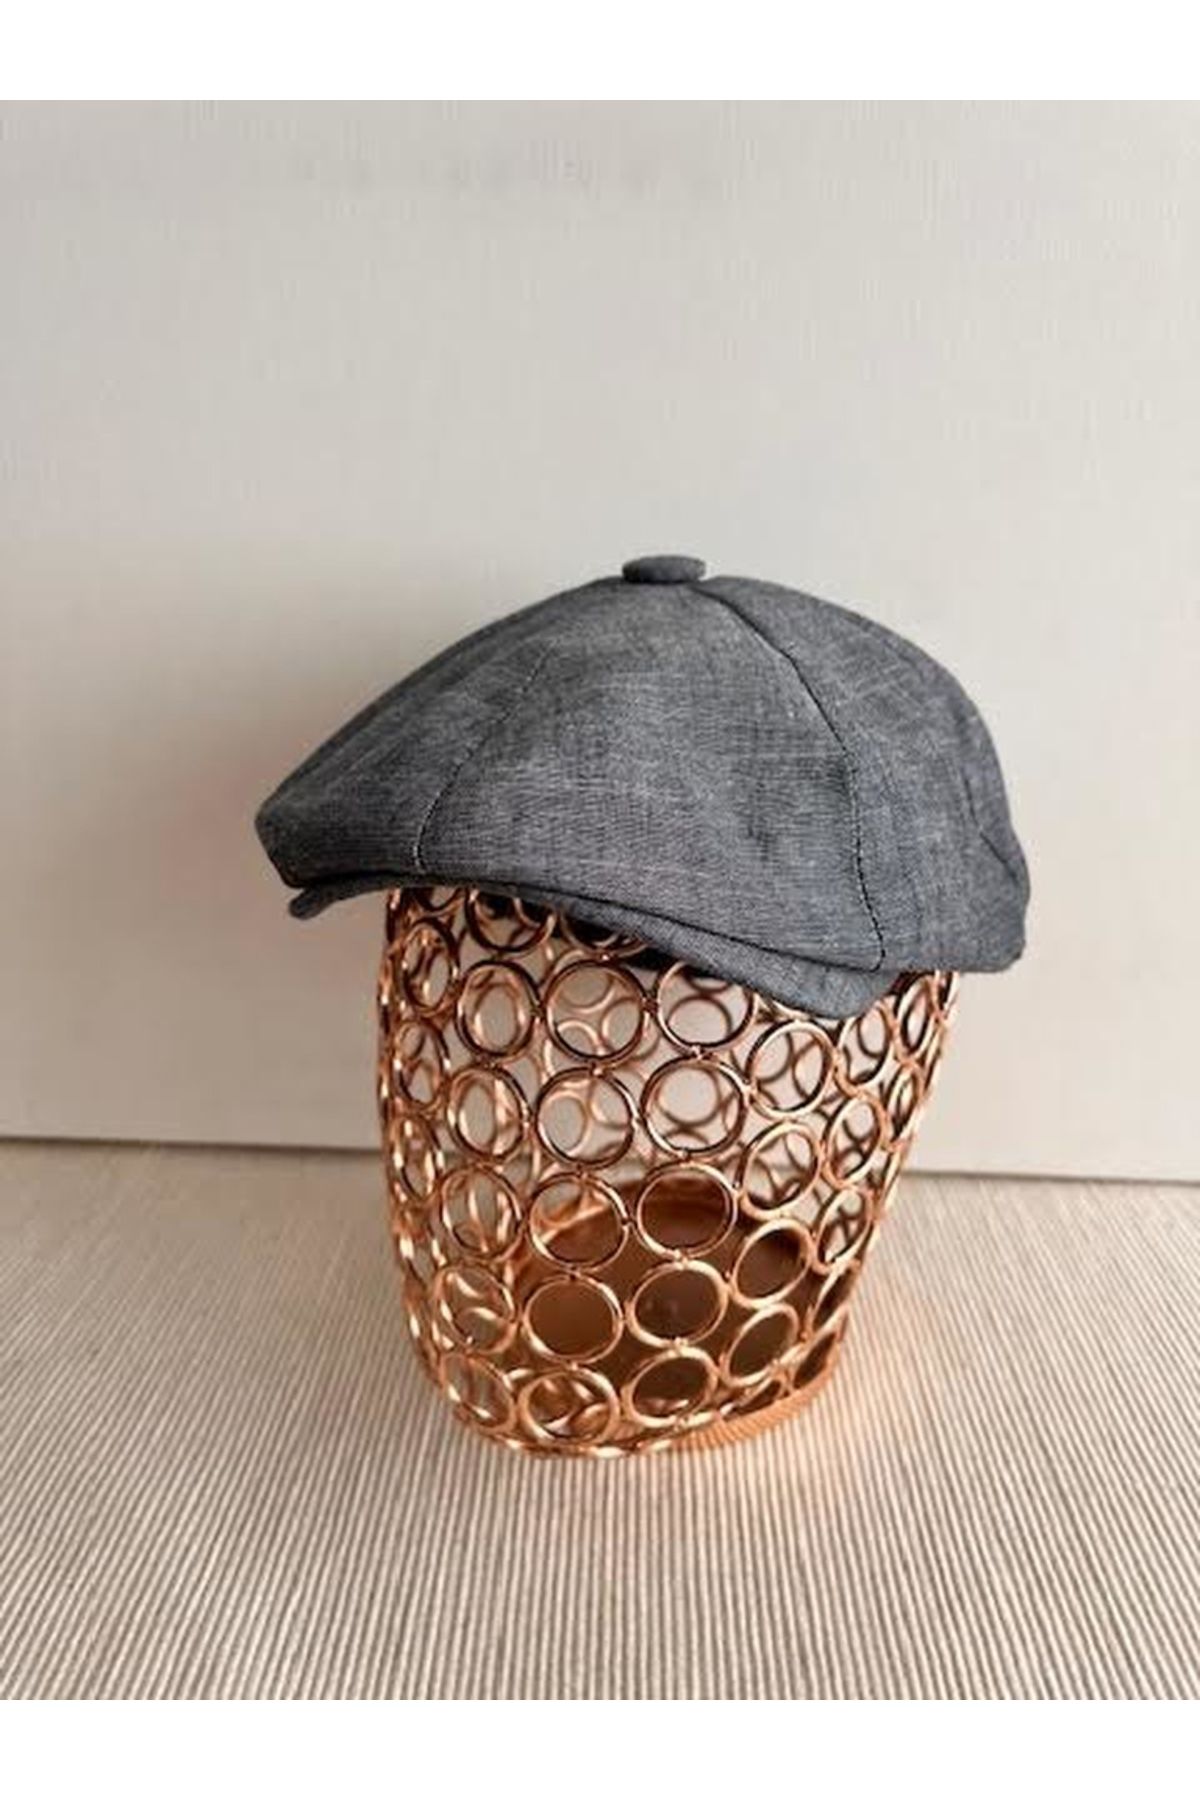 CosmoOutlet İngiliz Stili Sekiz Parça Arkası Lastikli Yazlık Füme Şapka